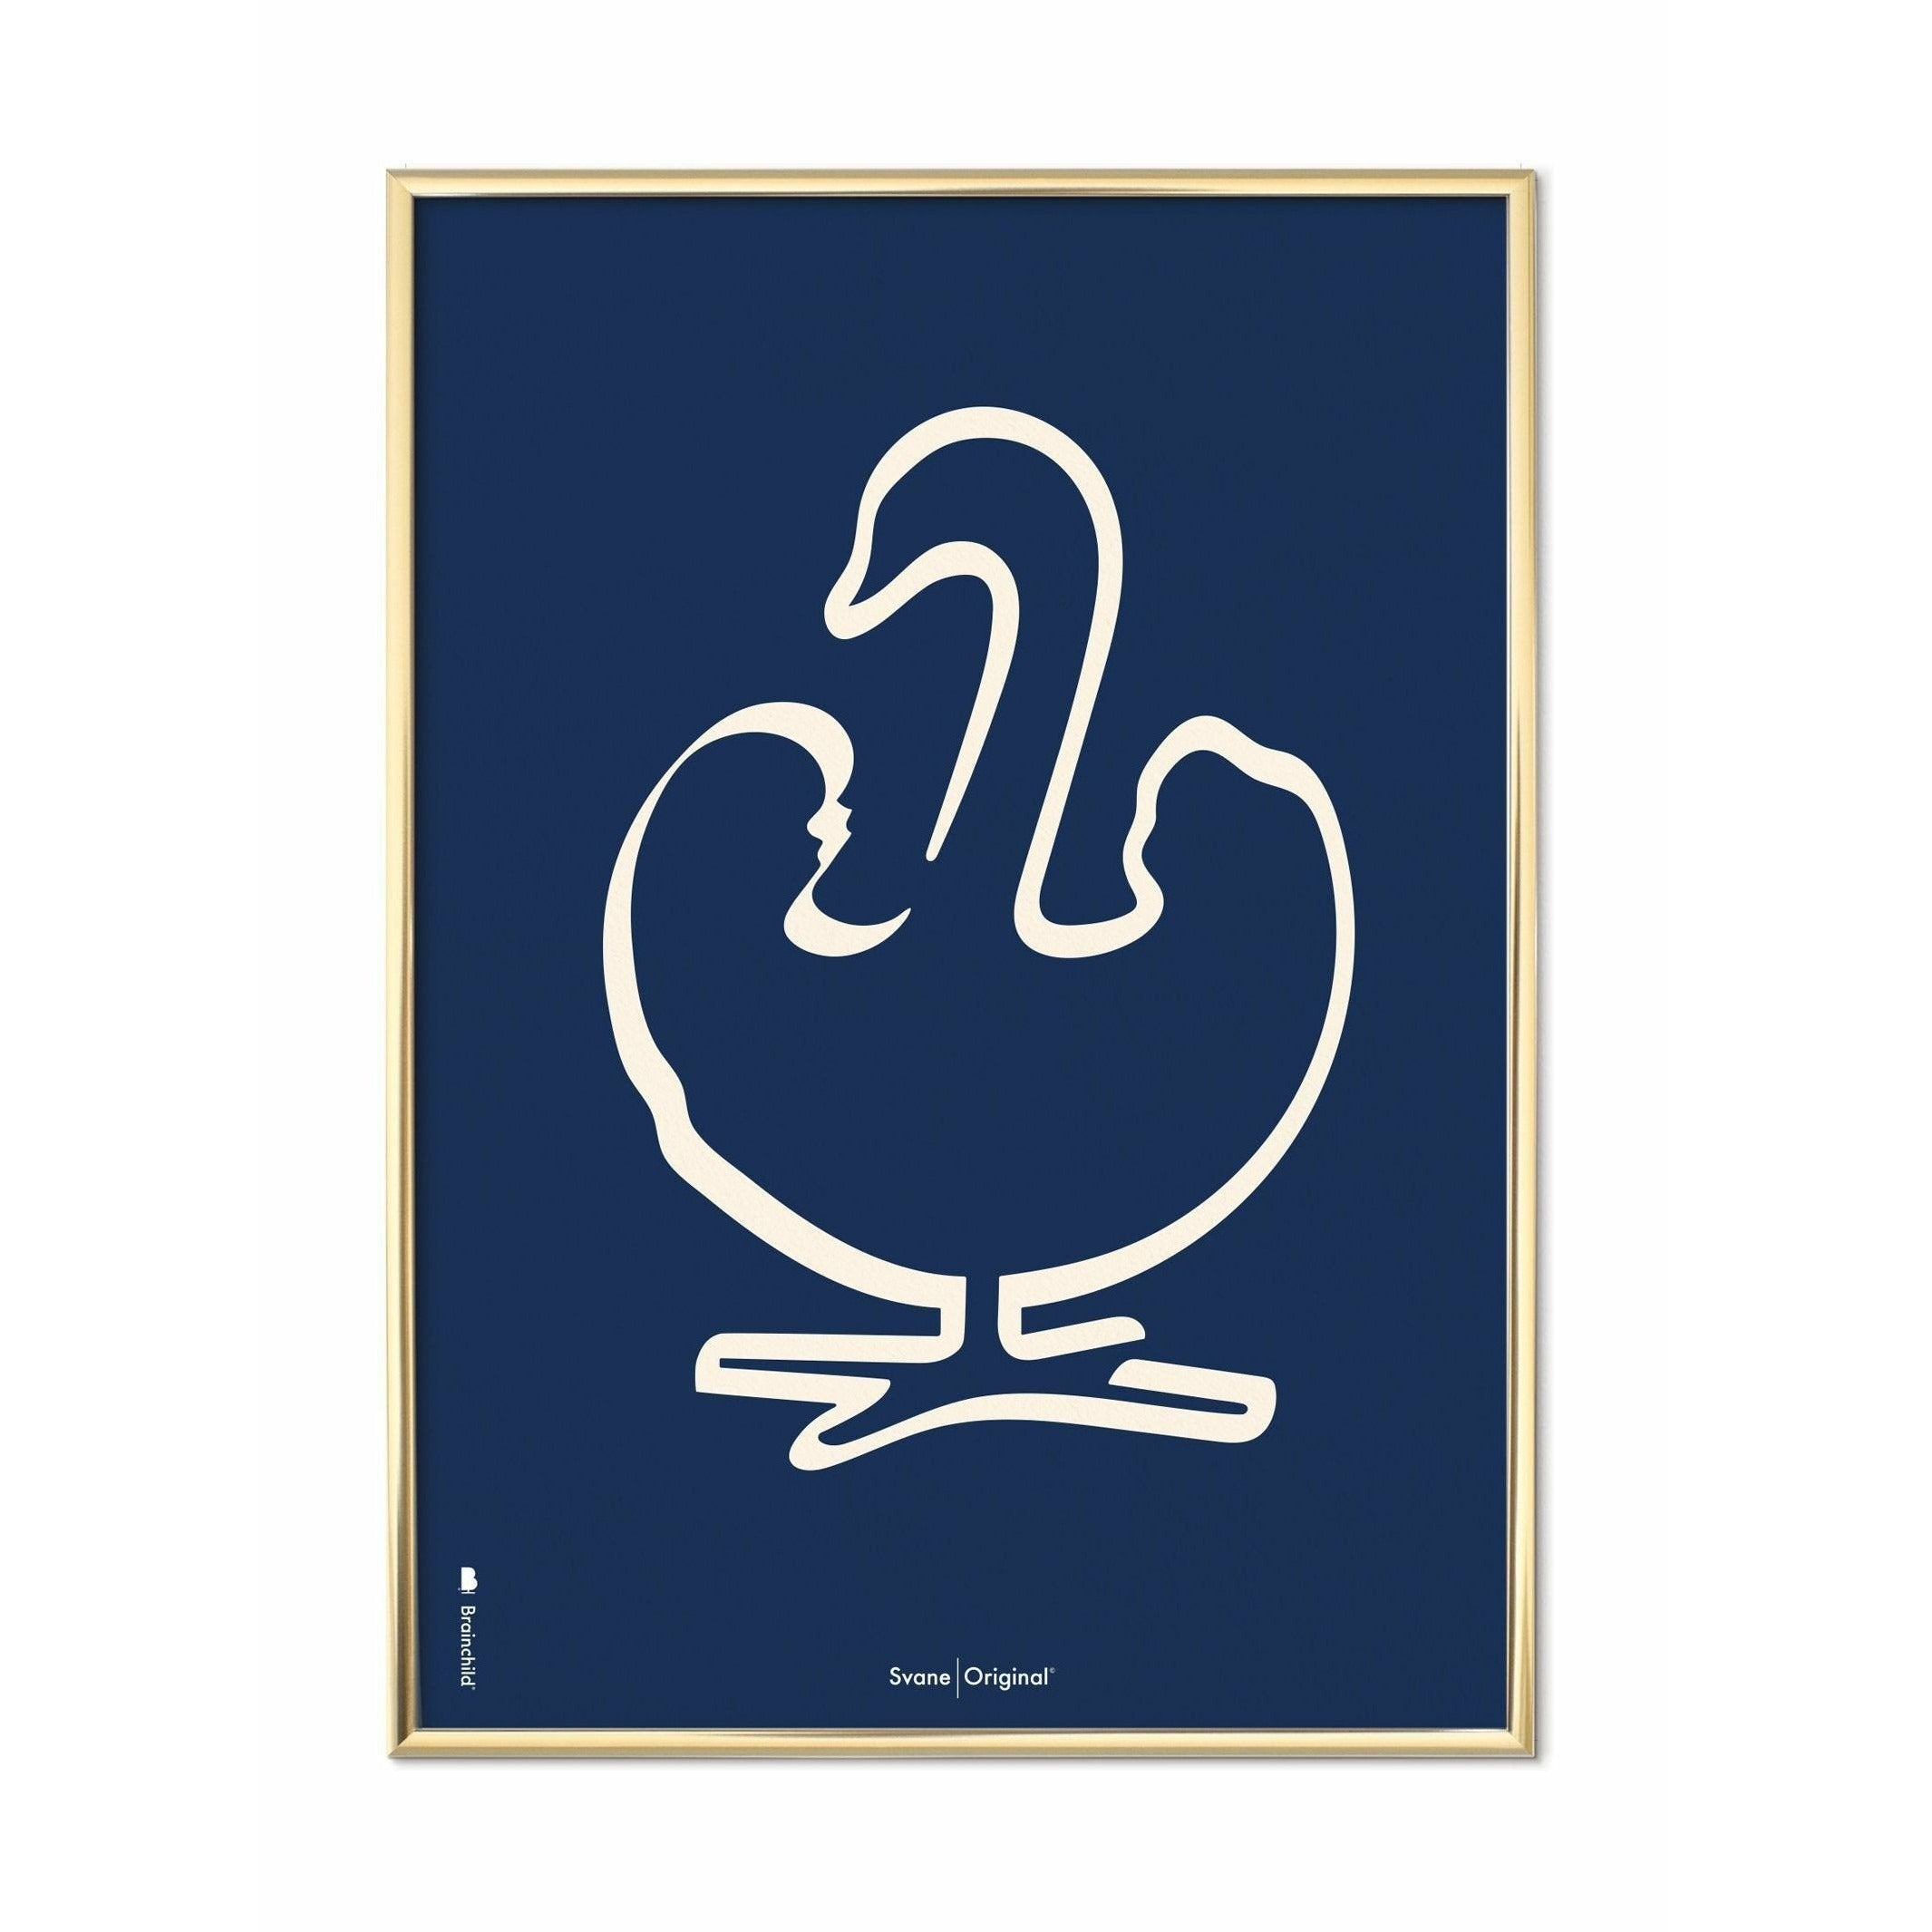 Plakát s labutí labutí mosazi, mosazný barevný rám A5, modré pozadí